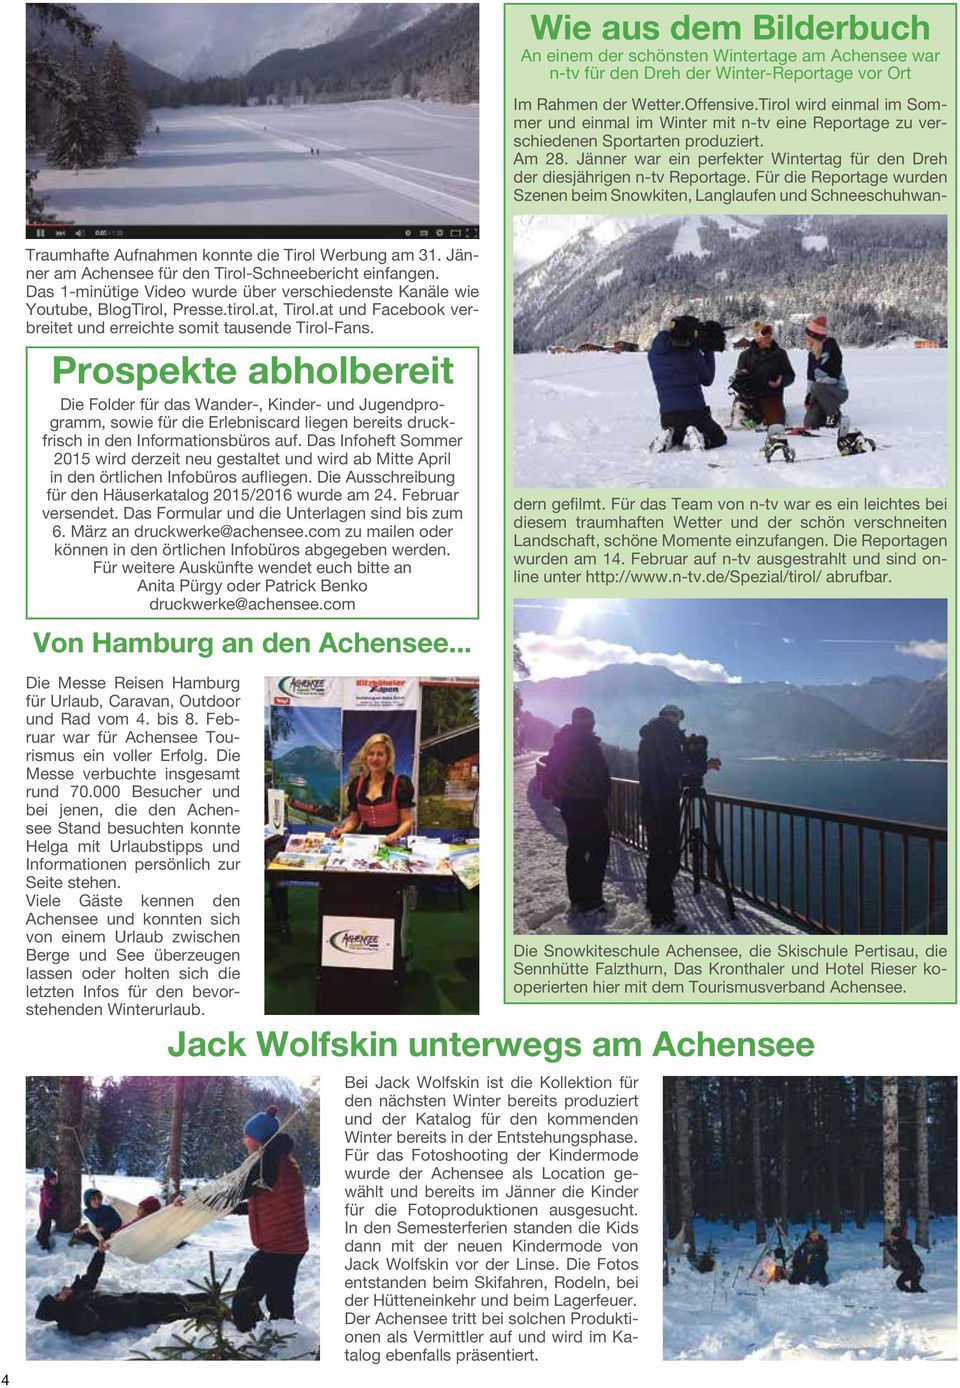 Für die Reportage wurden Szenen beim Snowkiten, Langlaufen und Schneeschuhwan- Traumhafte Aufnahmen konnte die Tirol Werbung am 31. Jänner am Achensee für den Tirol-Schneebericht einfangen.